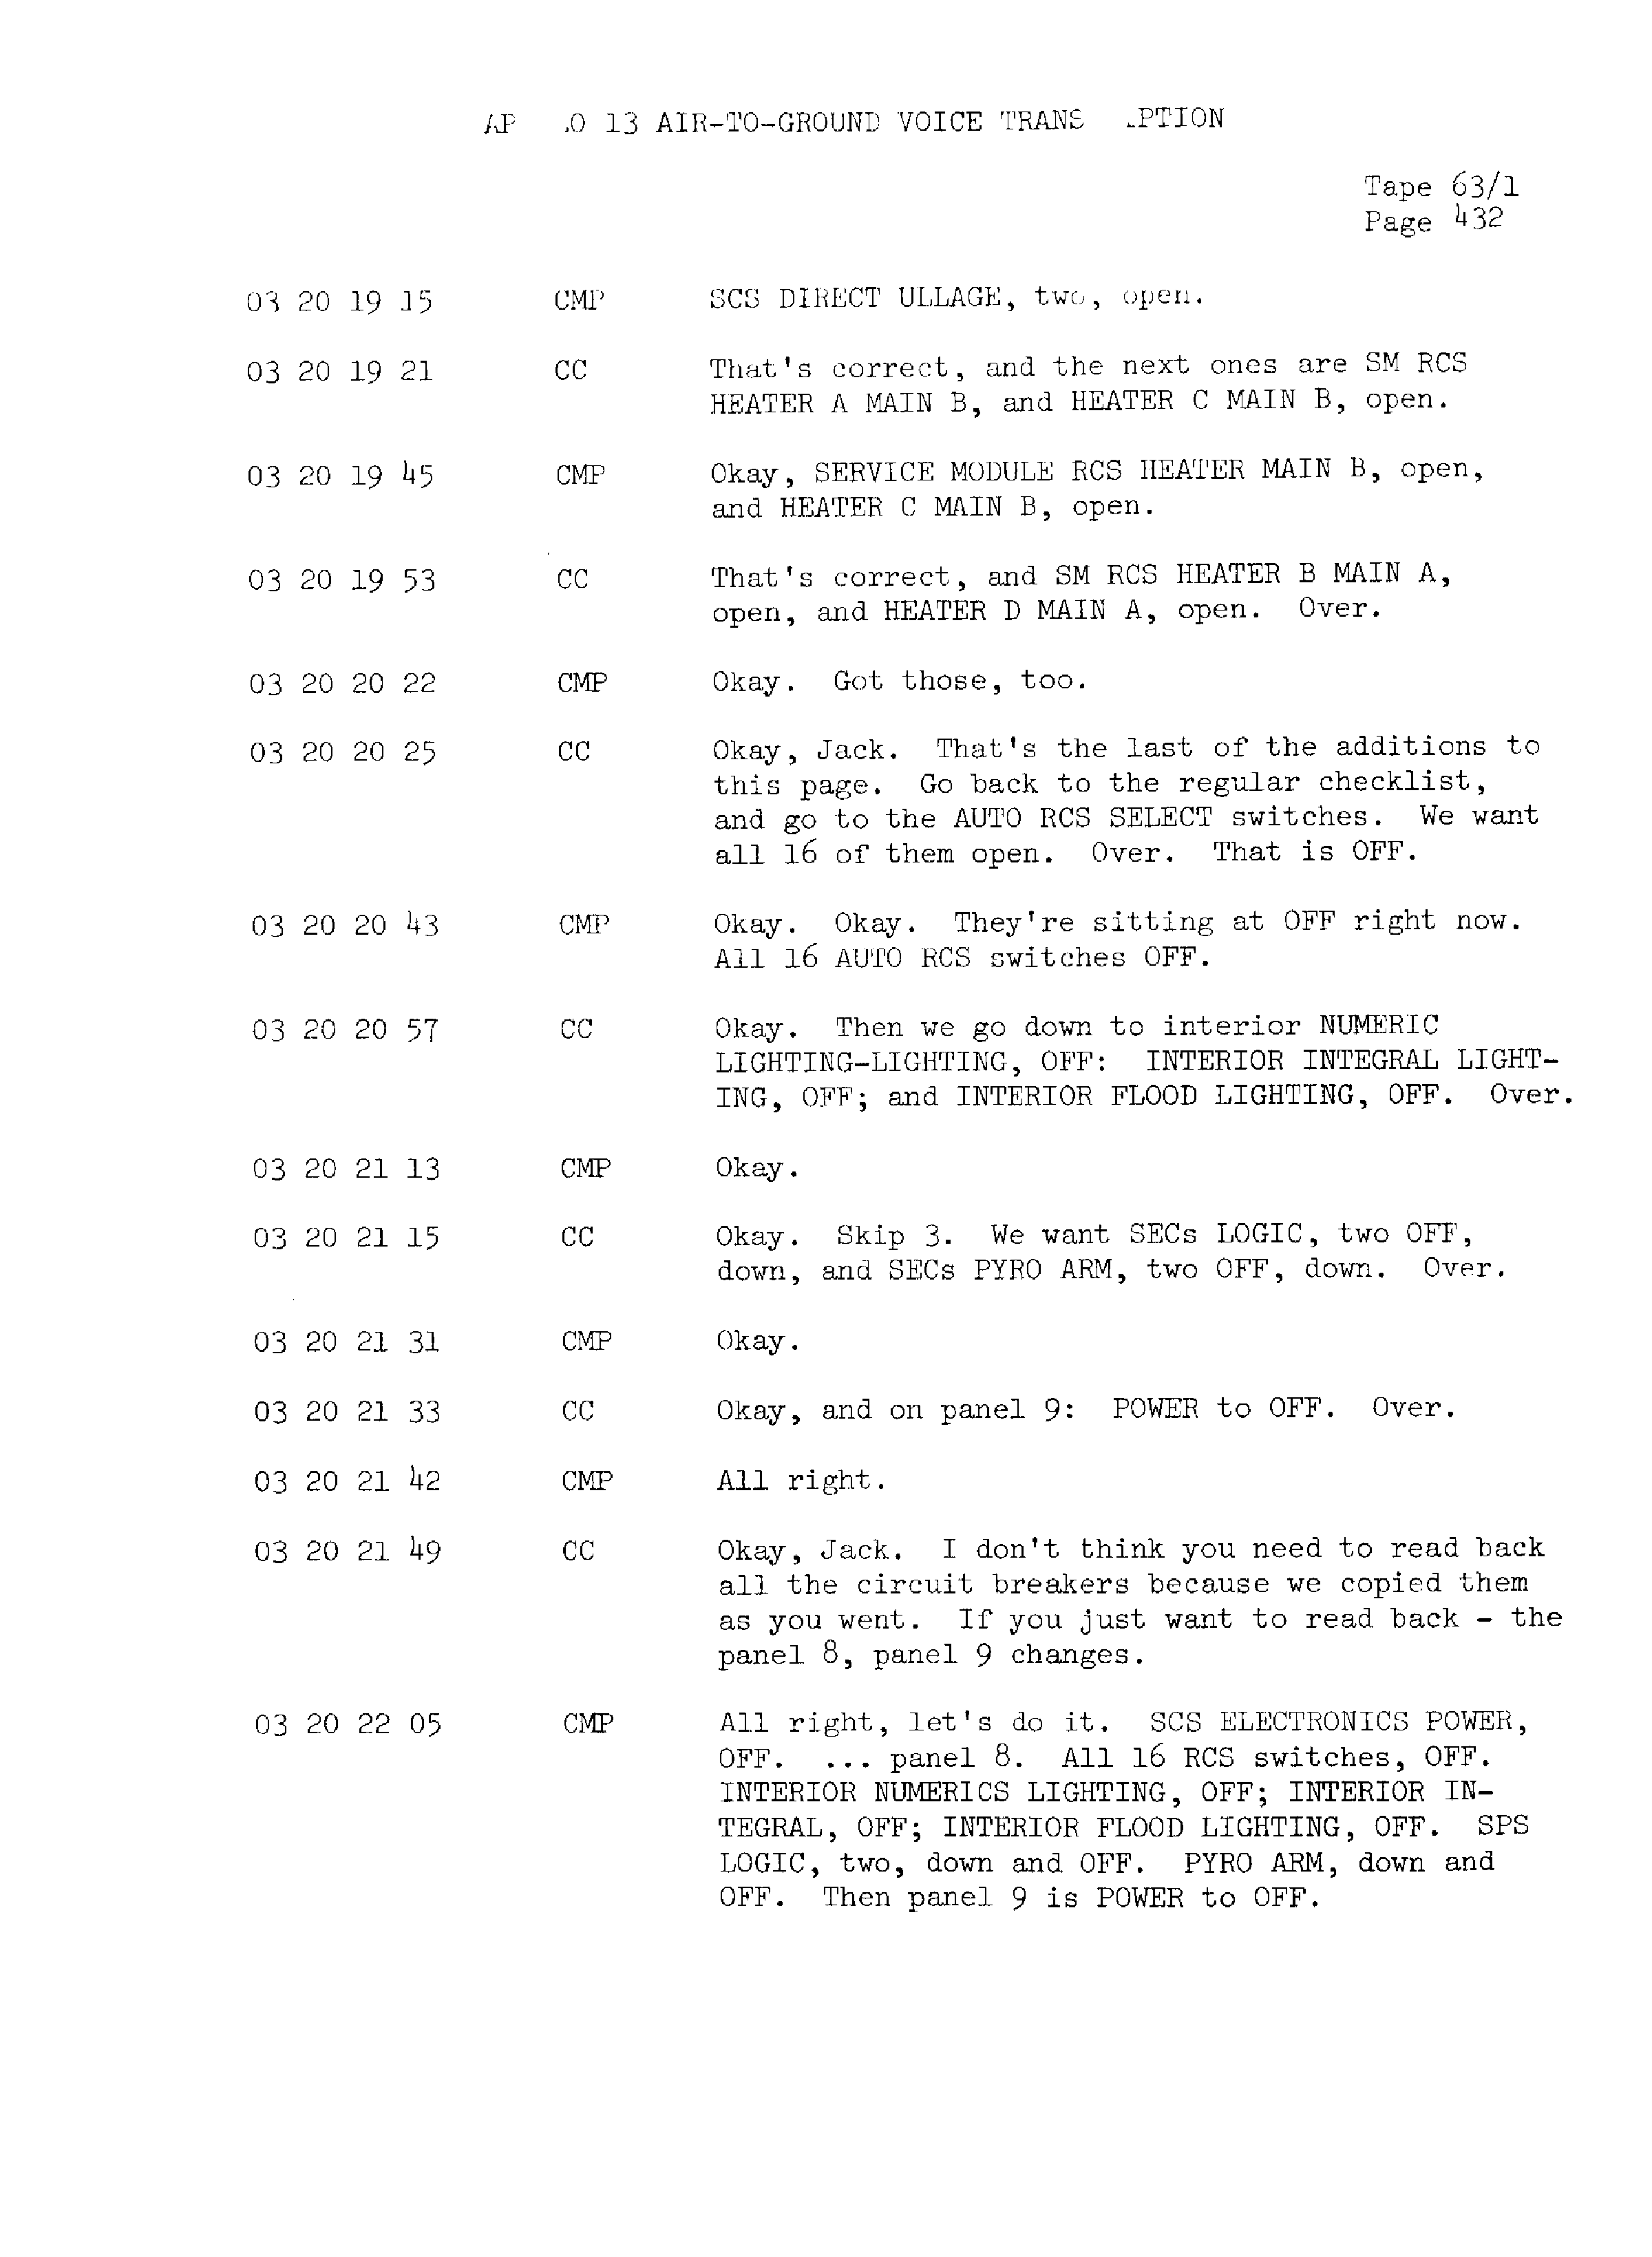 Page 439 of Apollo 13’s original transcript